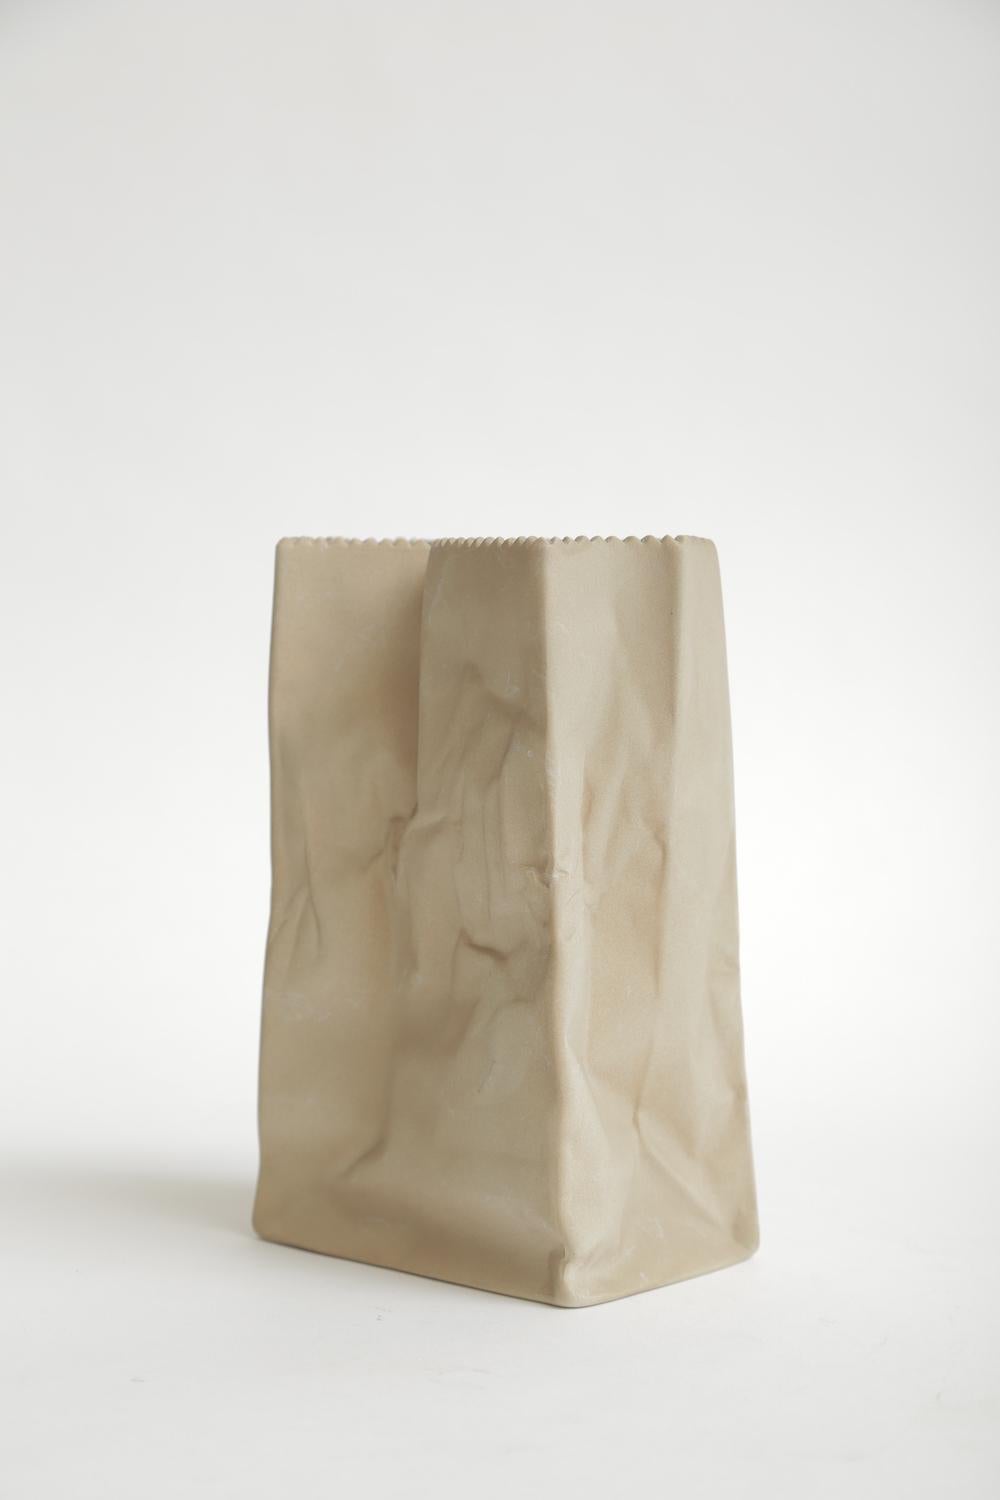 German Rosenthal Vintage Crushed Porcelain Brown Paper Bag Sculpture